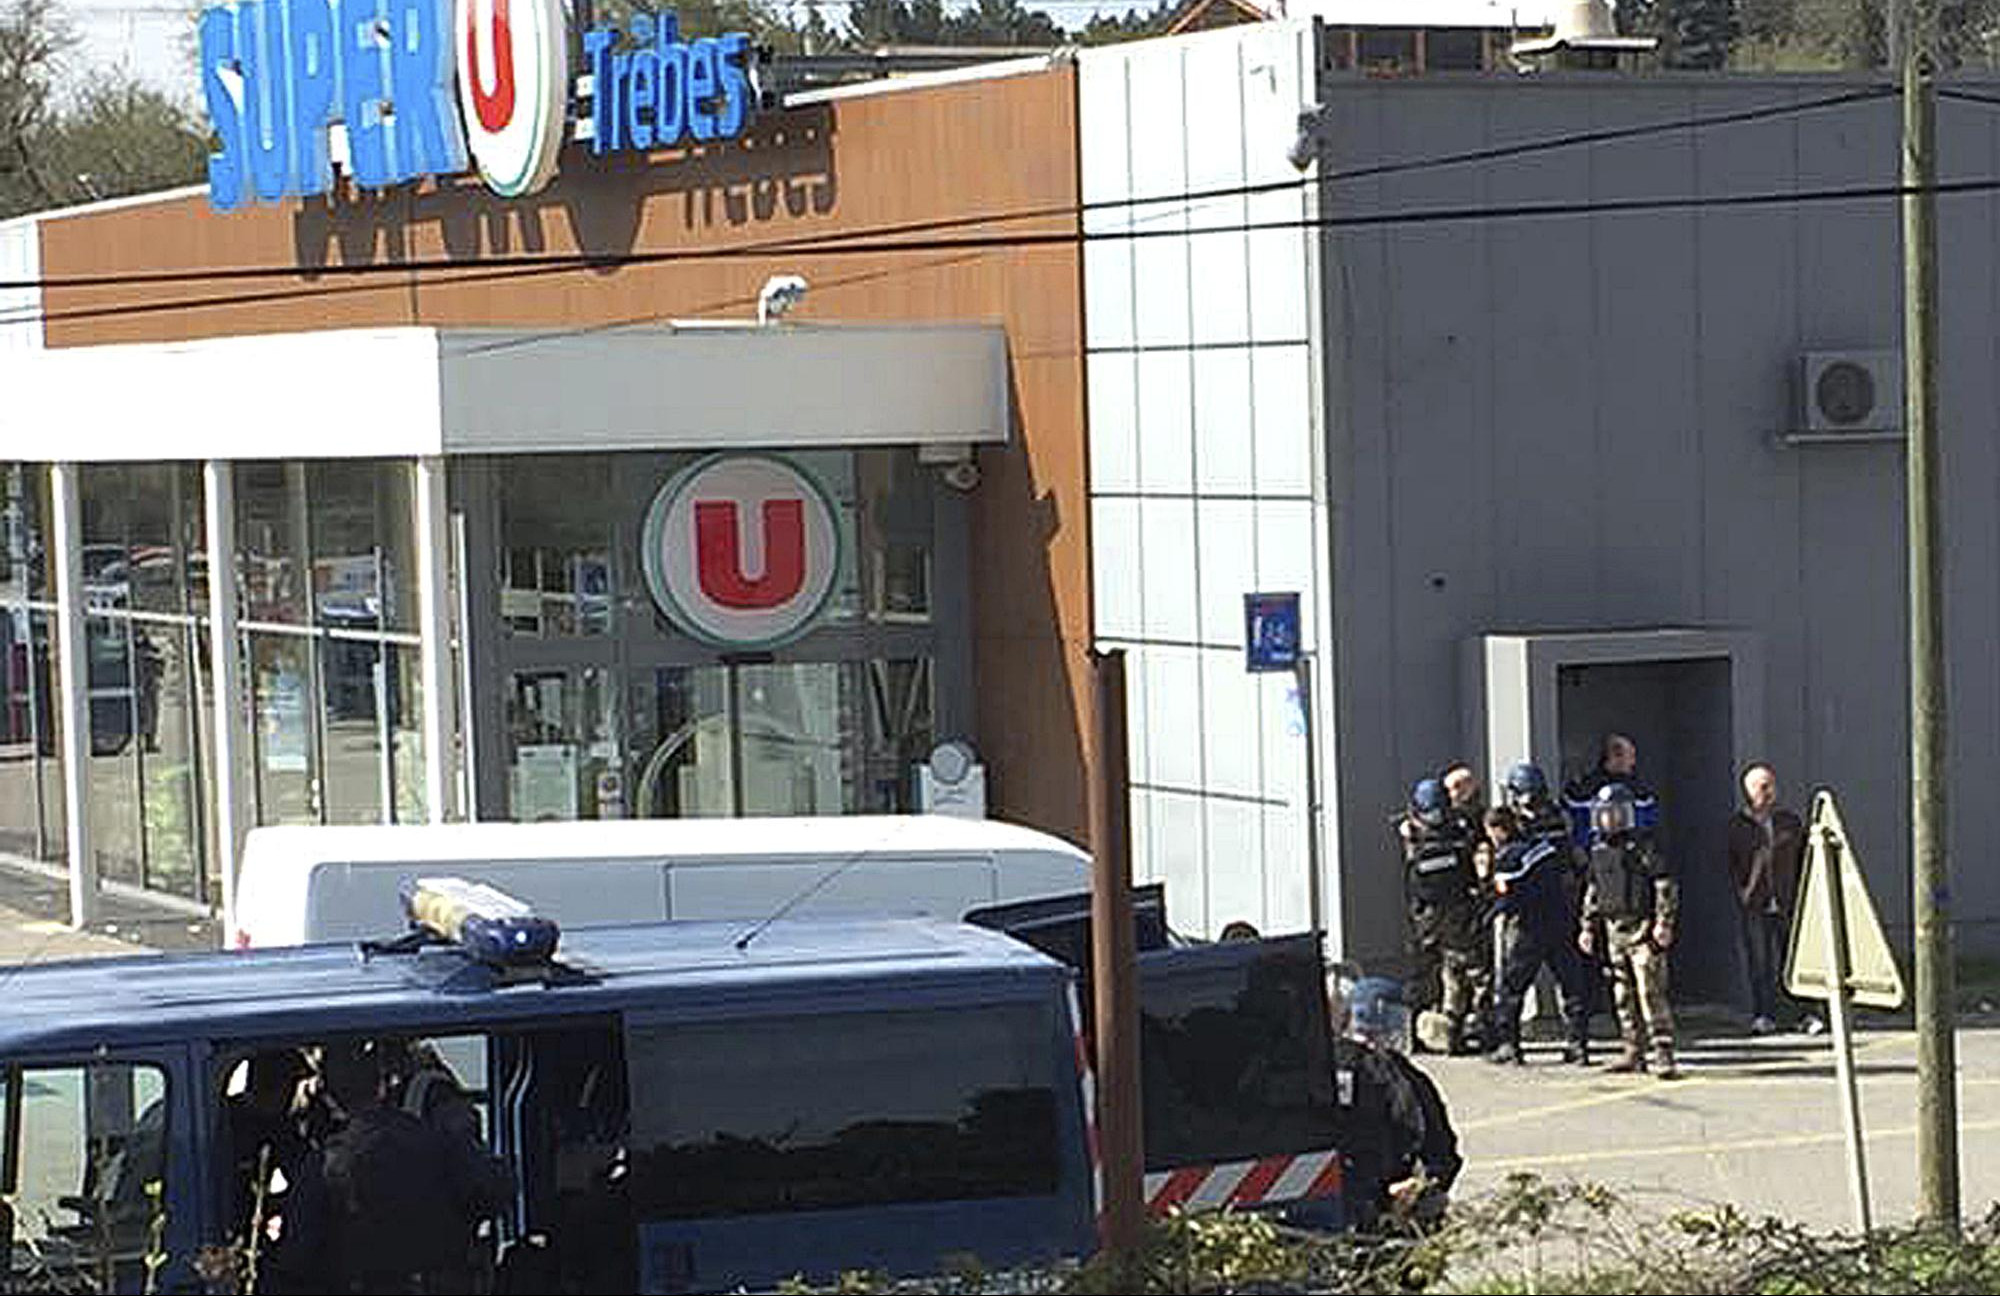 U DOMU TERORISTE PRONAĐENO OPROŠTAJNO PISMO, POMINJE SE ID: Francuska policija na mestu napada pronašla još TRI EKSPLOZIVNE NAPRAVE!